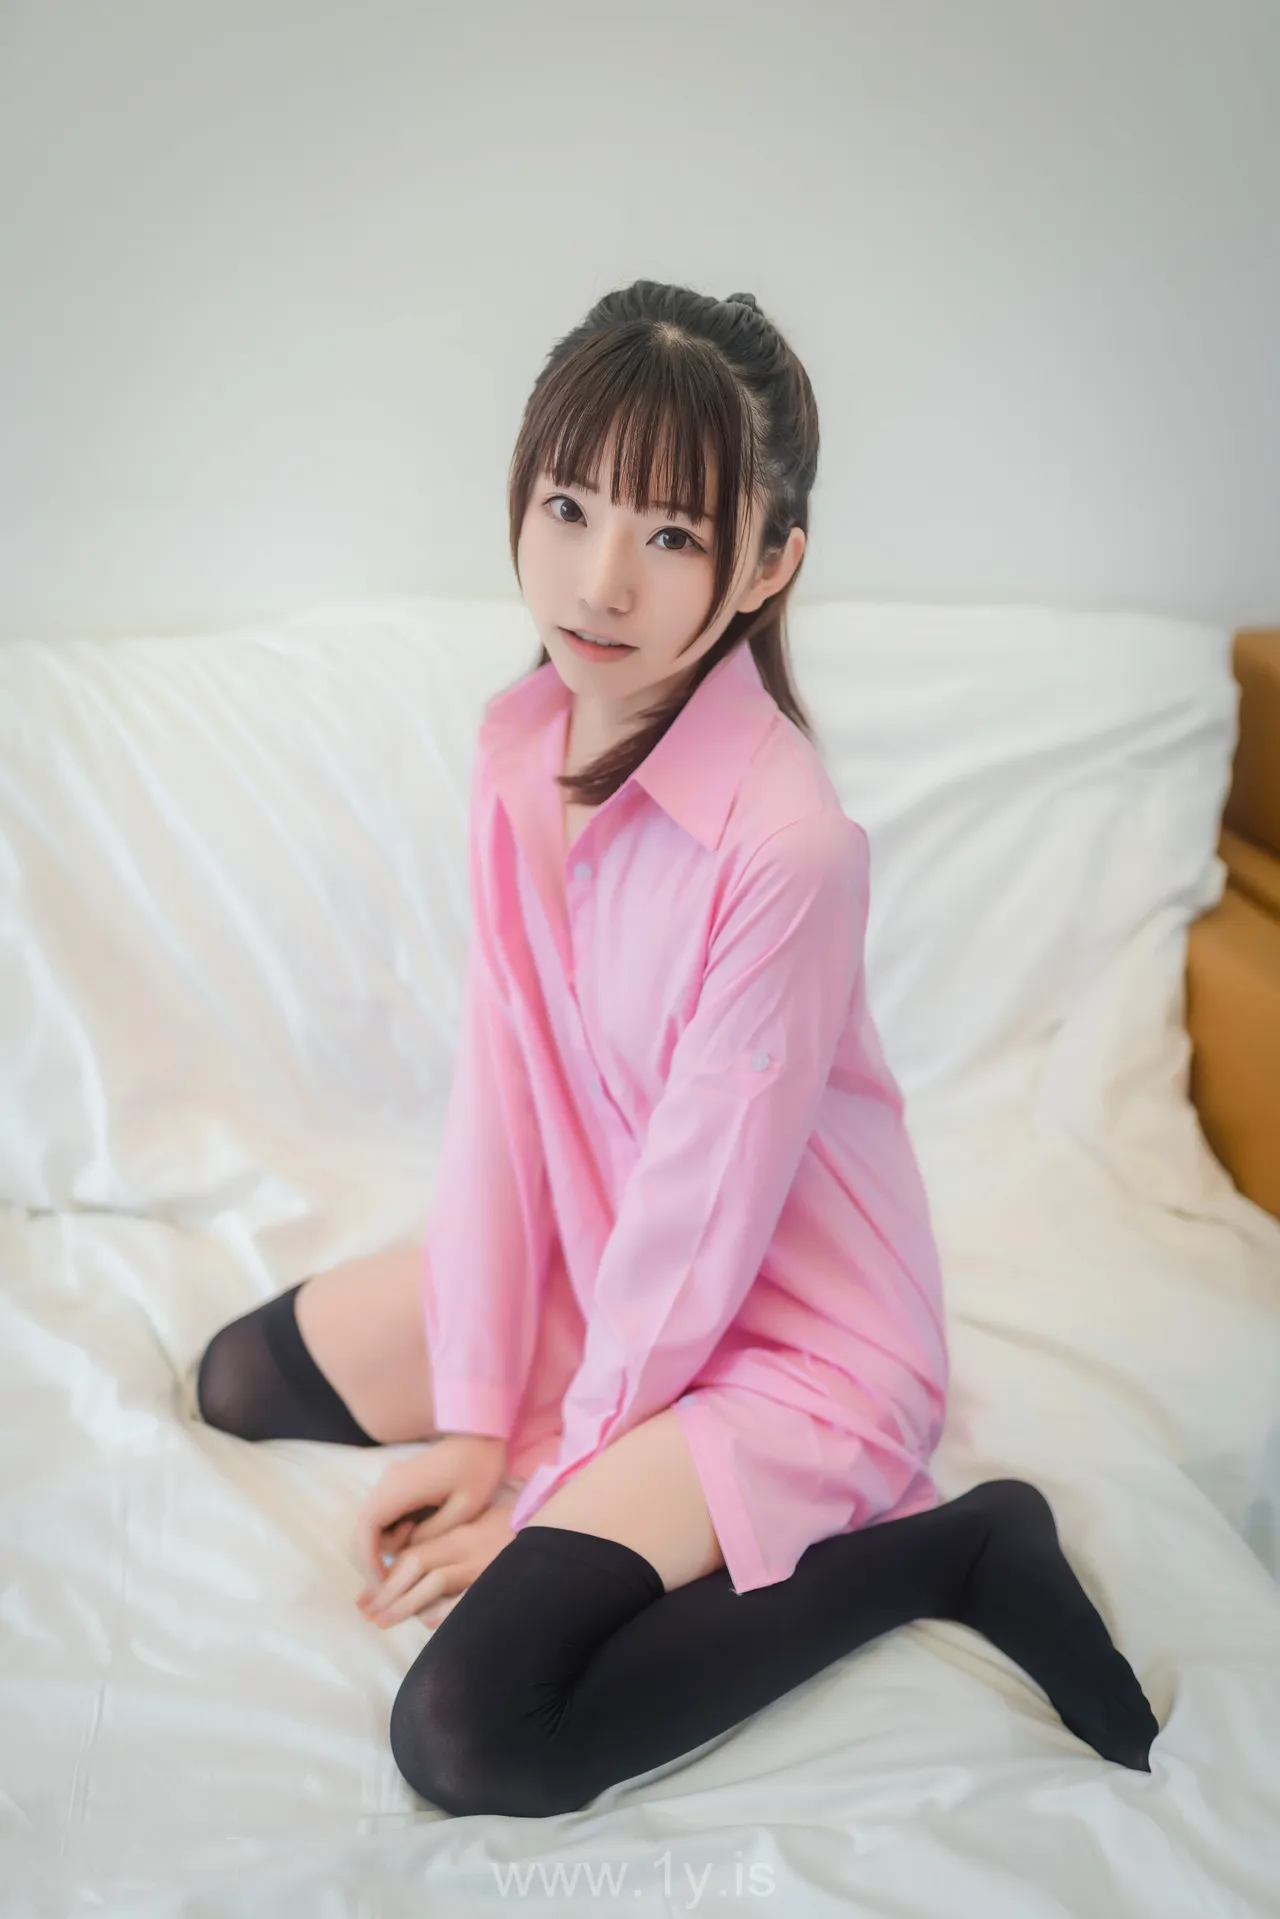 绮太郎 粉色衬衫